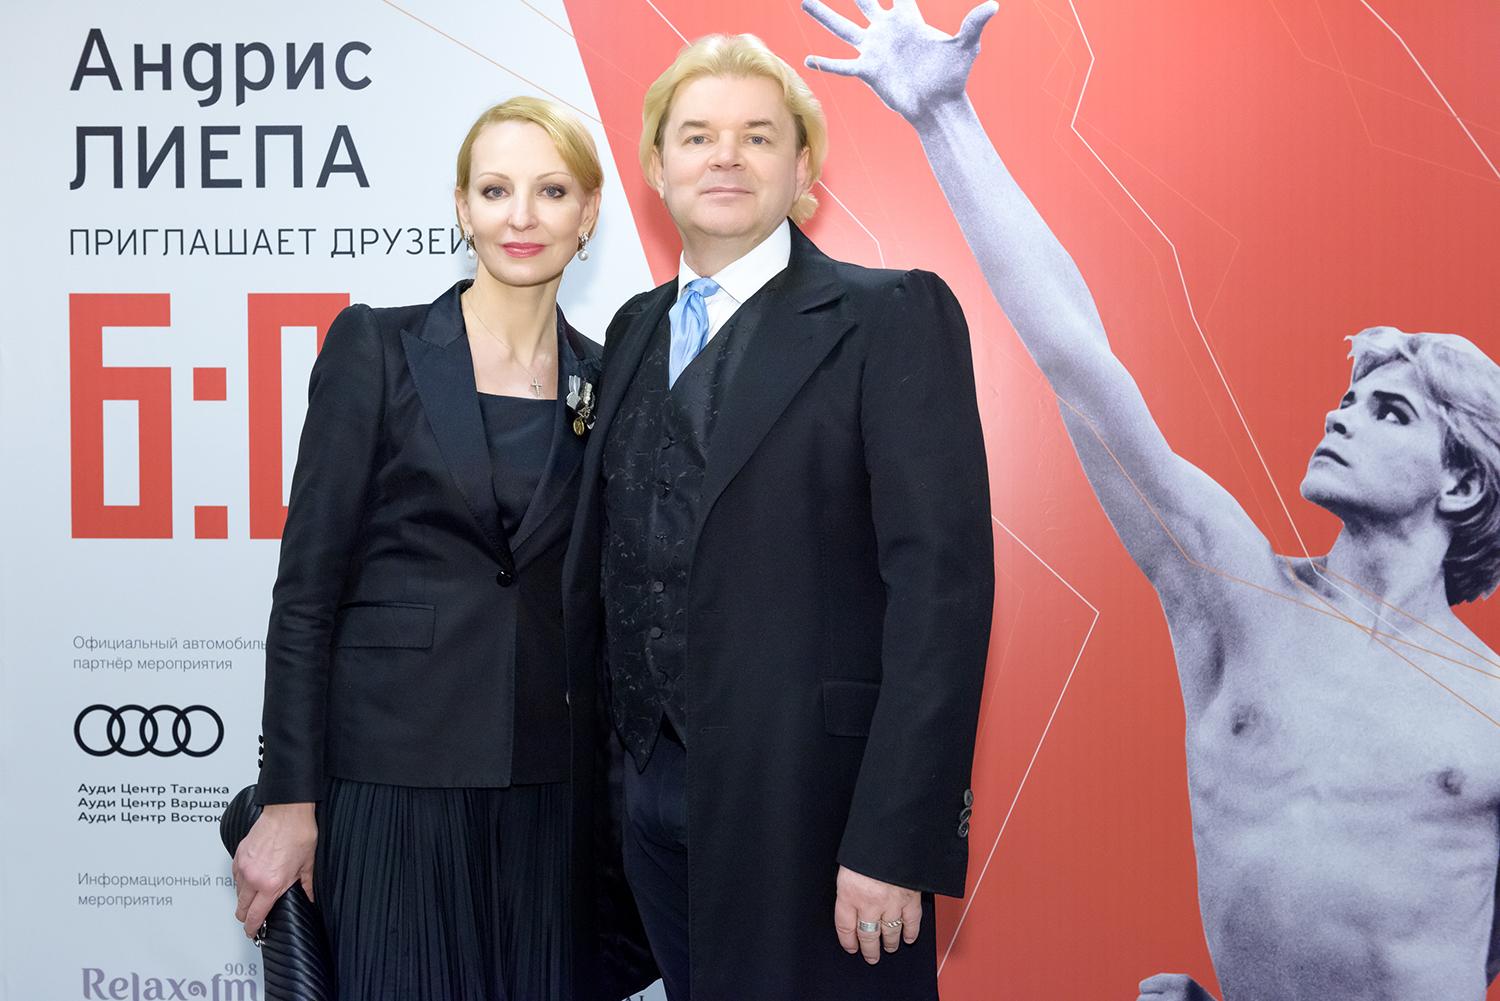 Магия искусства: в Кремлевском дворце состоялся концерт звезд мирового балета «Андрис Лиепа 6:0»